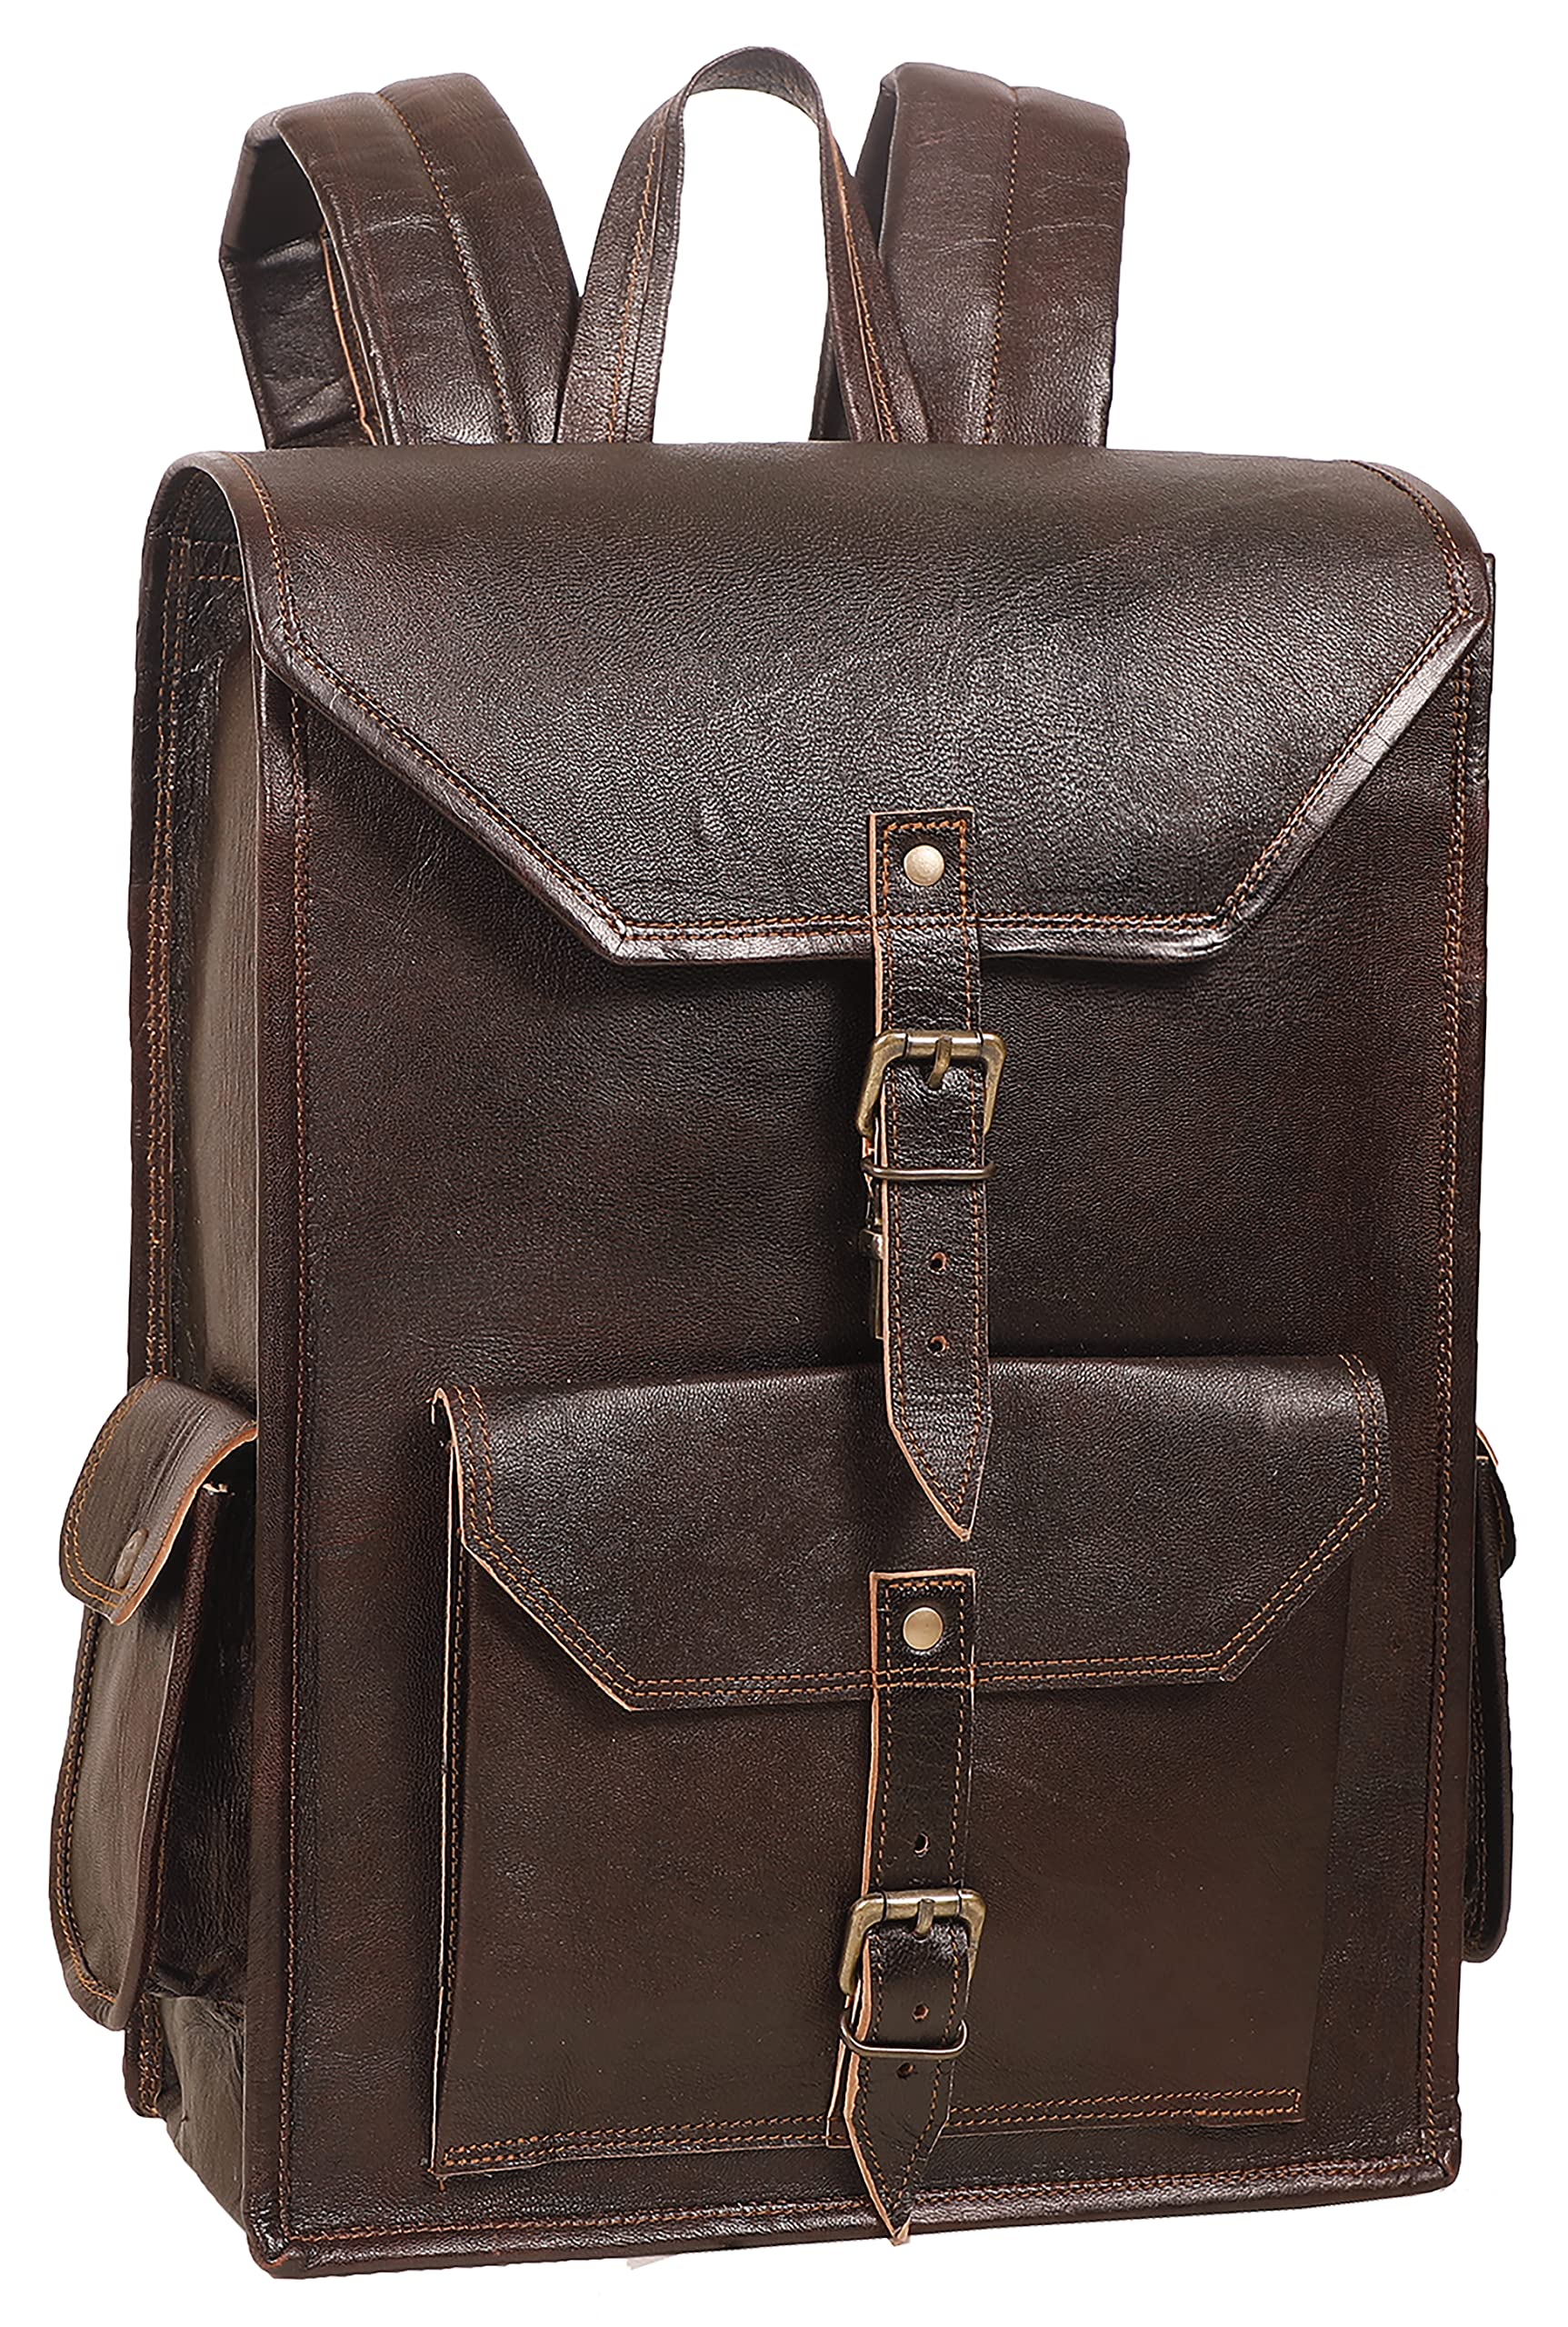 送料無料Handmade World Vintage Full Grain 16 Inch Leather Laptop Backpack Casual Bookbag Daypack Camping Travel Rucksack